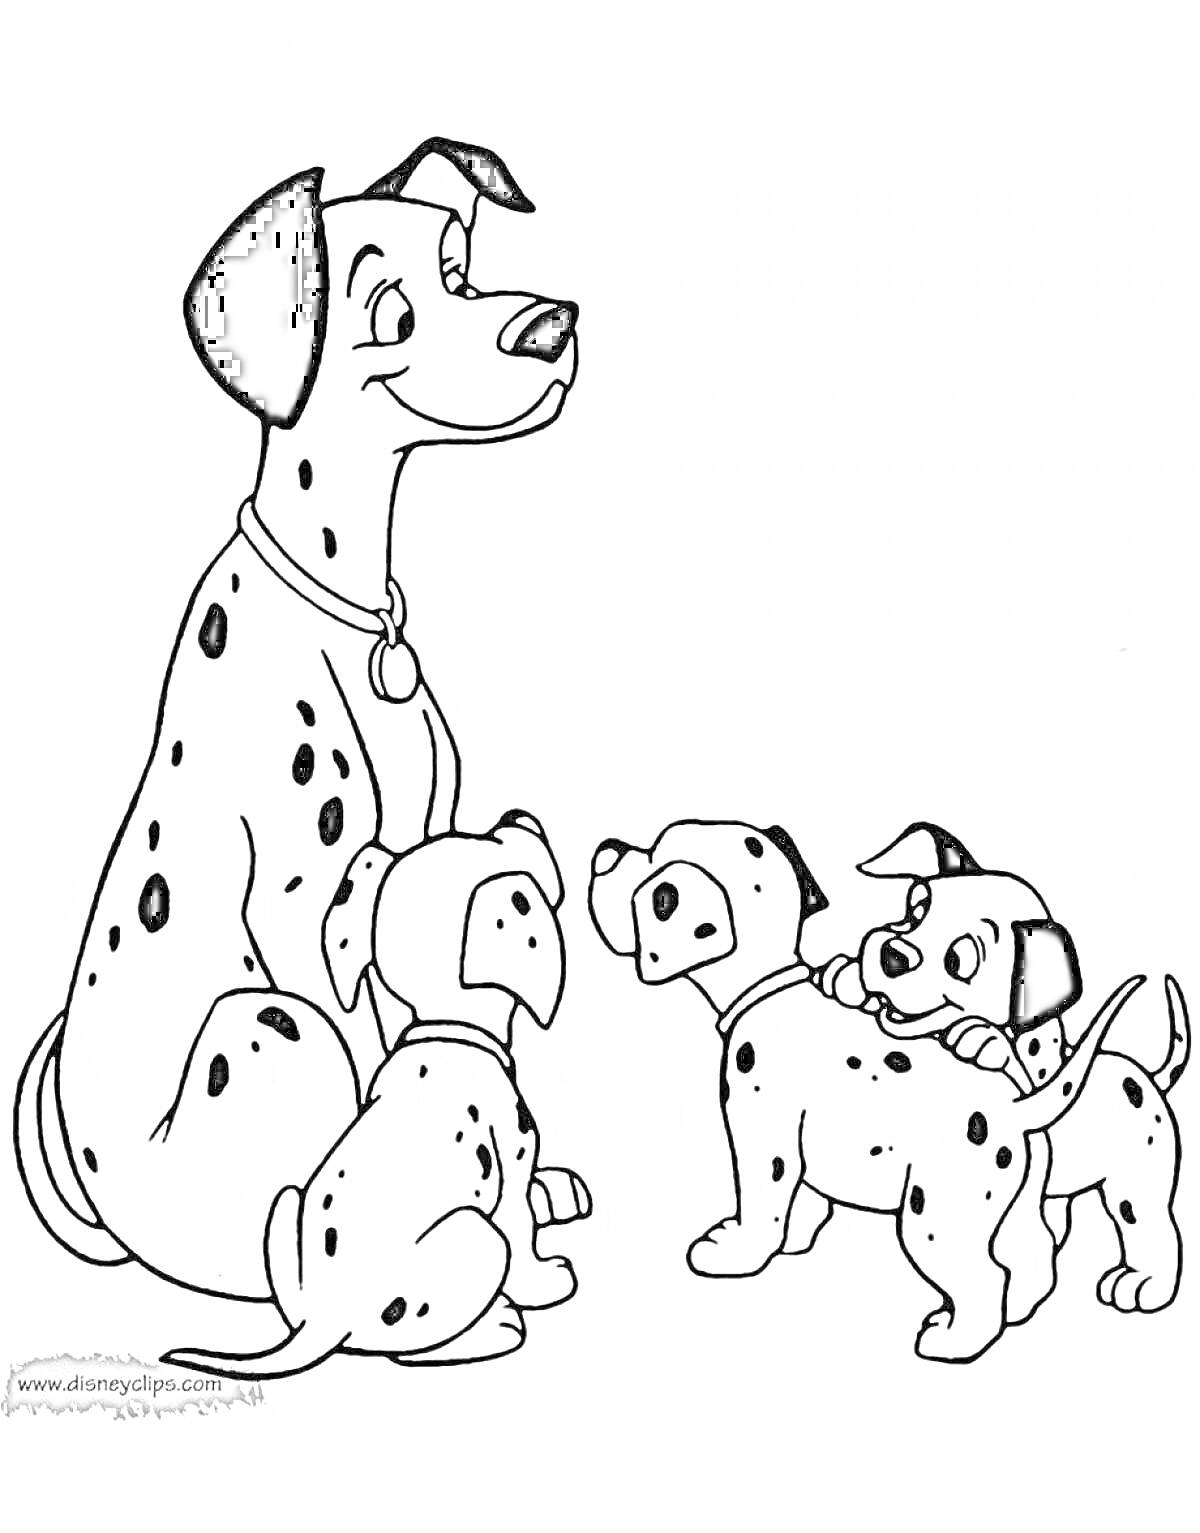 Раскраска Далматинец со щенками